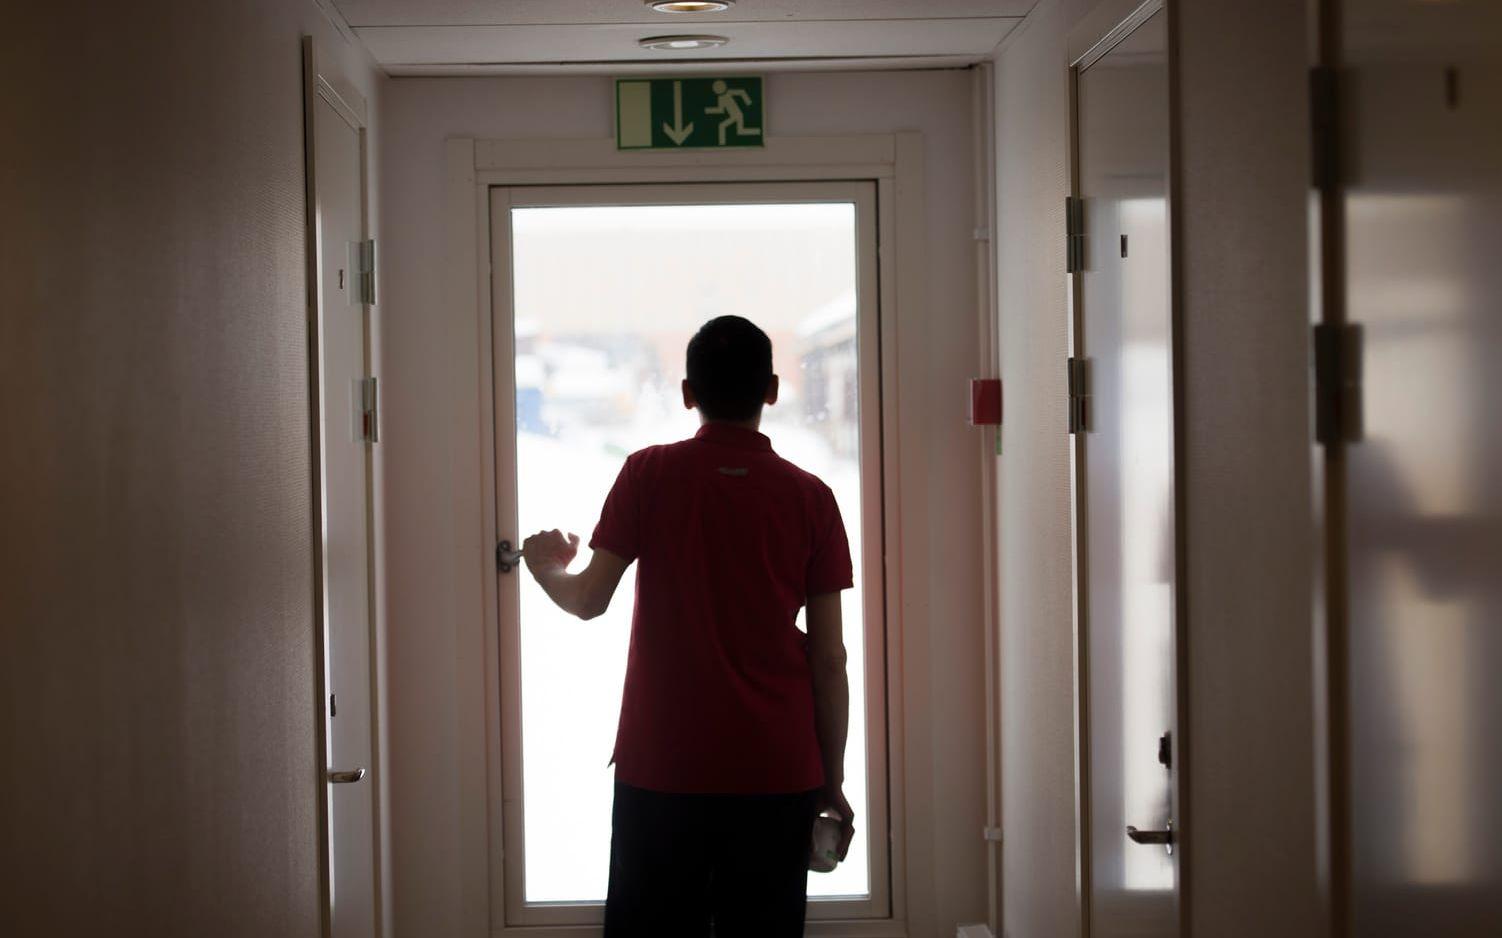 Tre ensamkommande har tagit sina liv på boenden i Sverige i år. Bild: TT